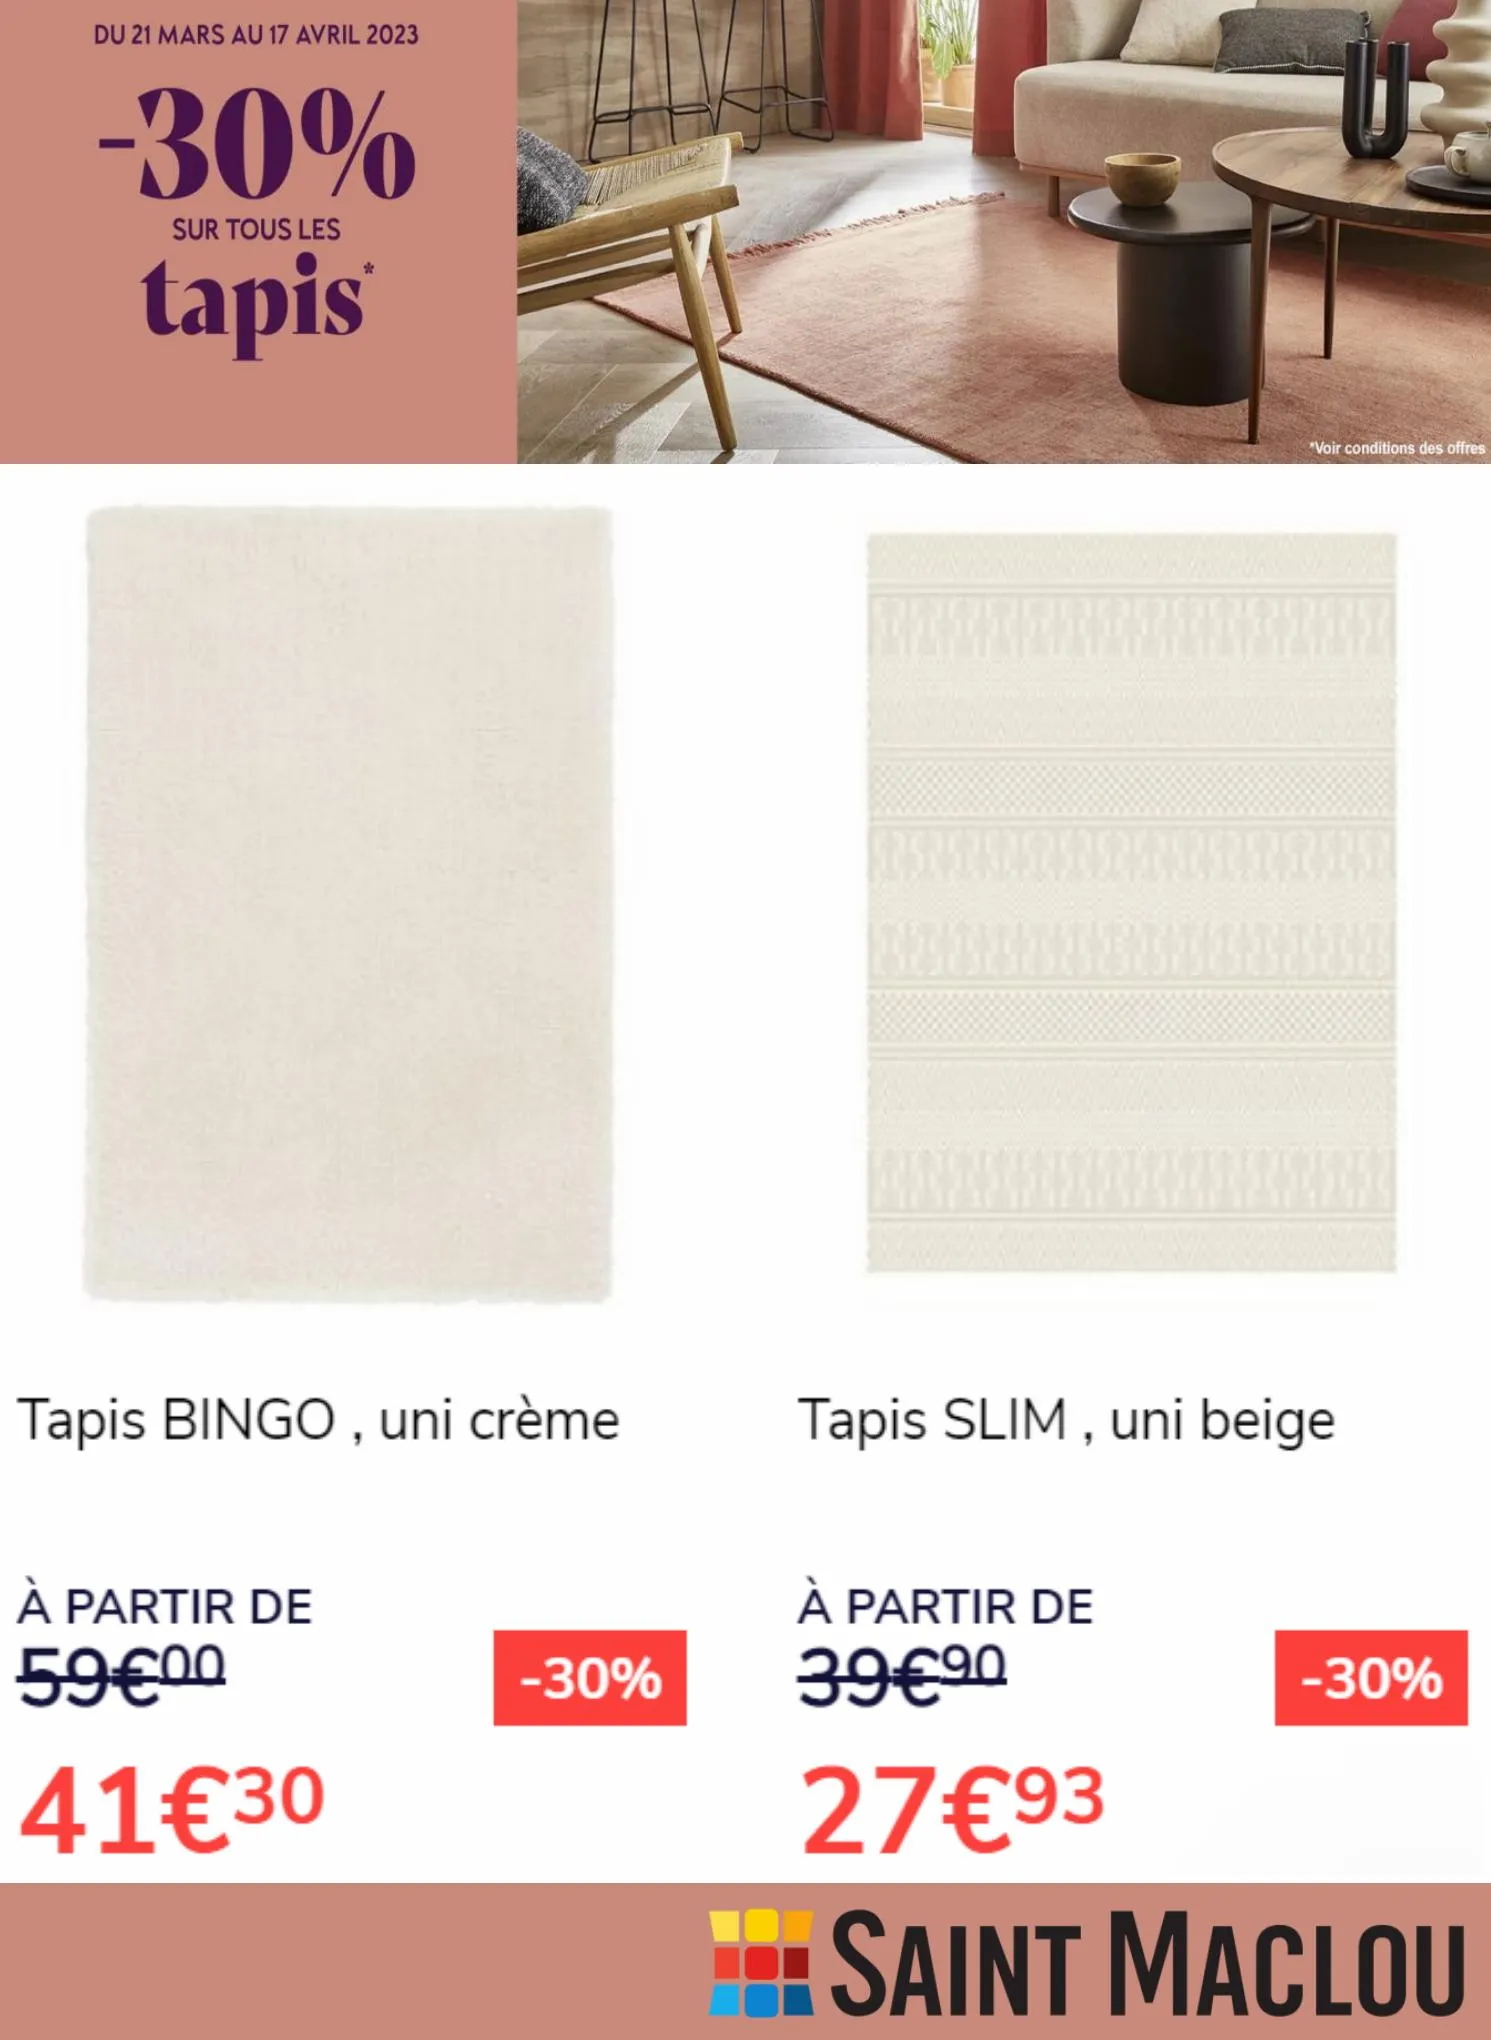 Catalogue -30% Sur tous les Tapis*, page 00003